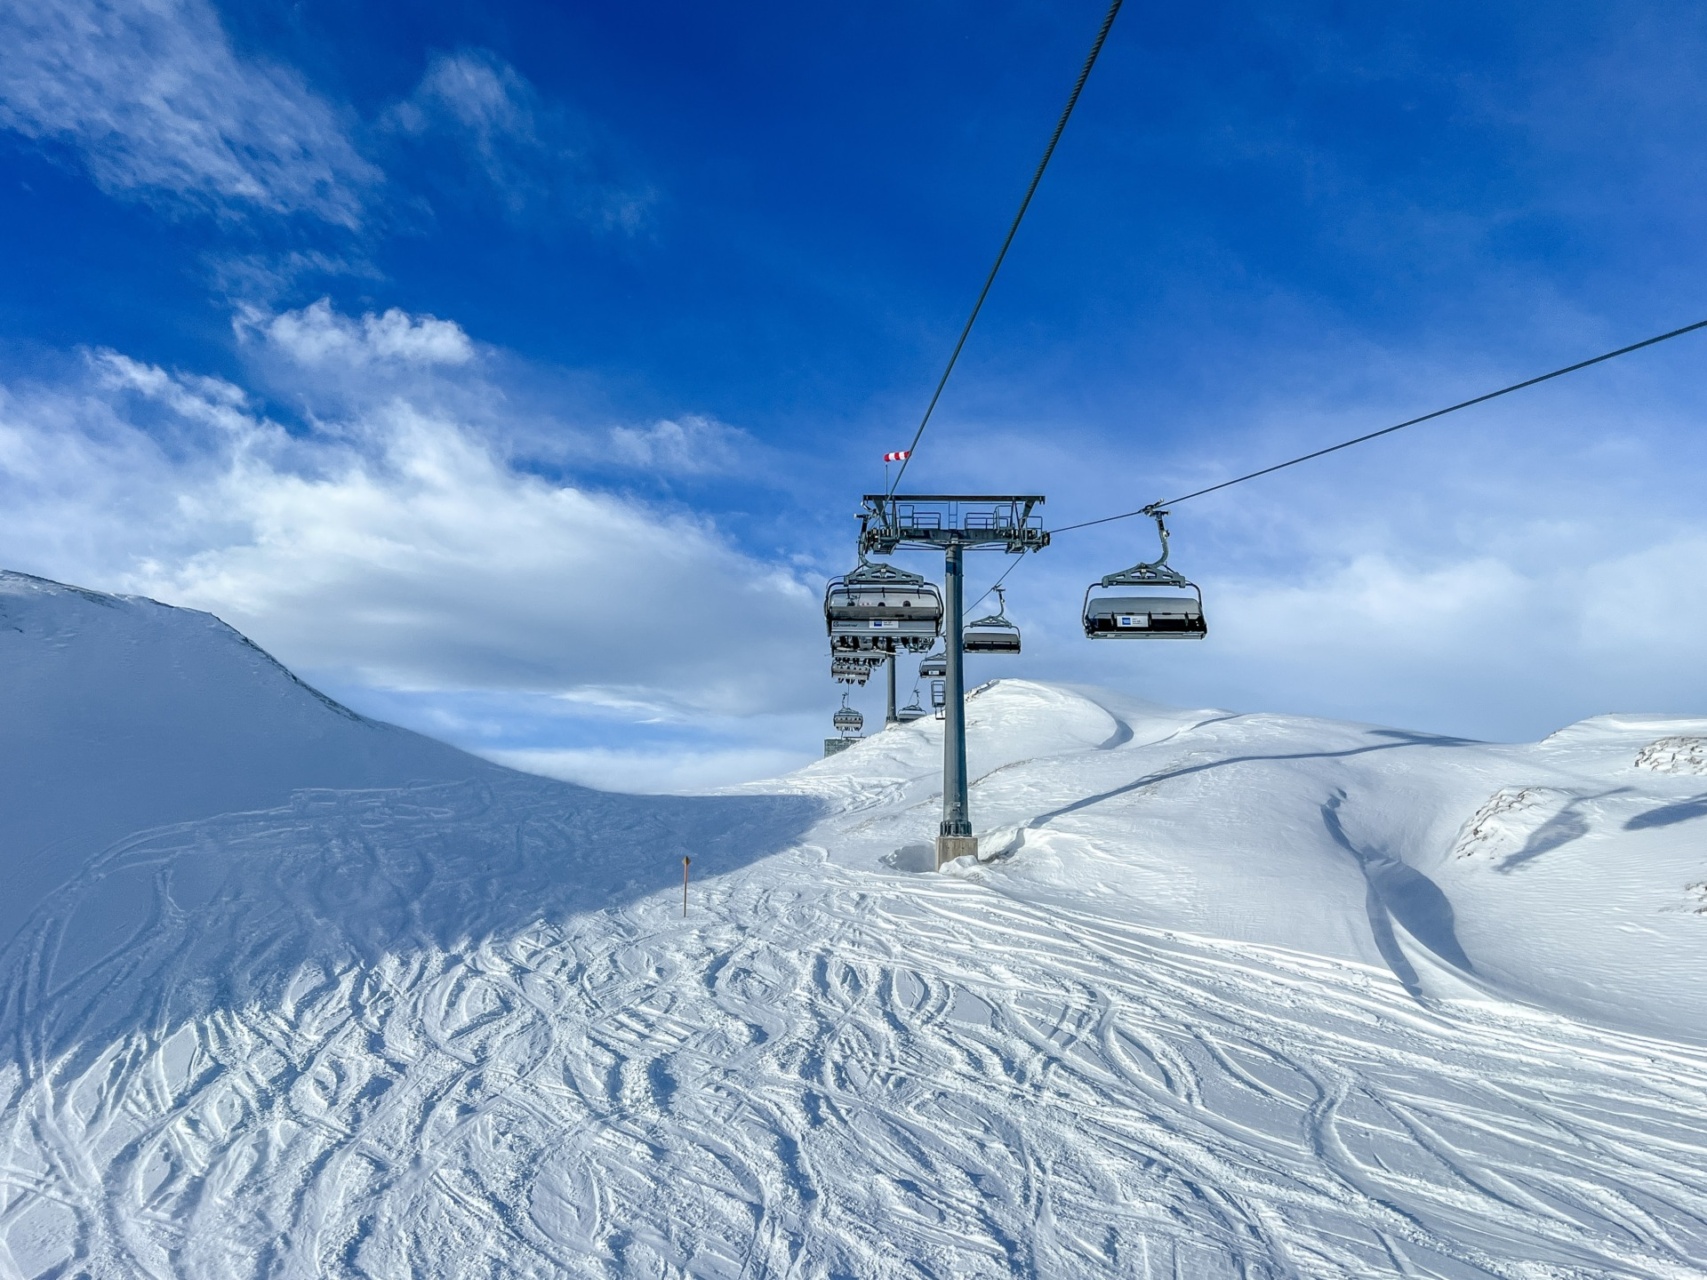 Alpen- Sauerland weerbericht | Kou en sneeuw voor de vakantiegangers